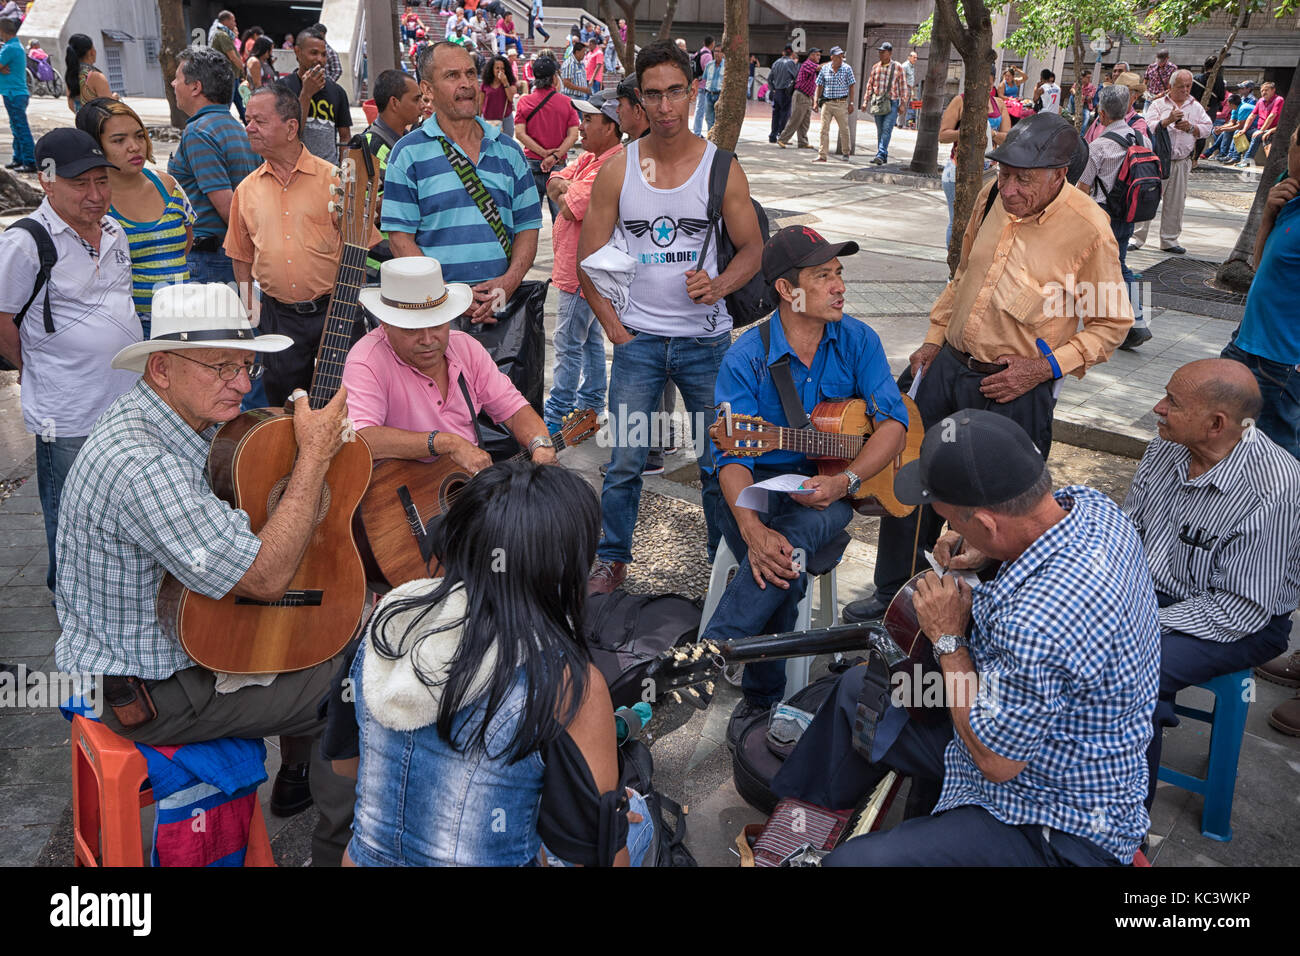 Settembre 26, 2017 a Medellin, Colombia: gli uomini si preparano a suonare la chitarra nel "Parque de berrio' nel centro della città Foto Stock